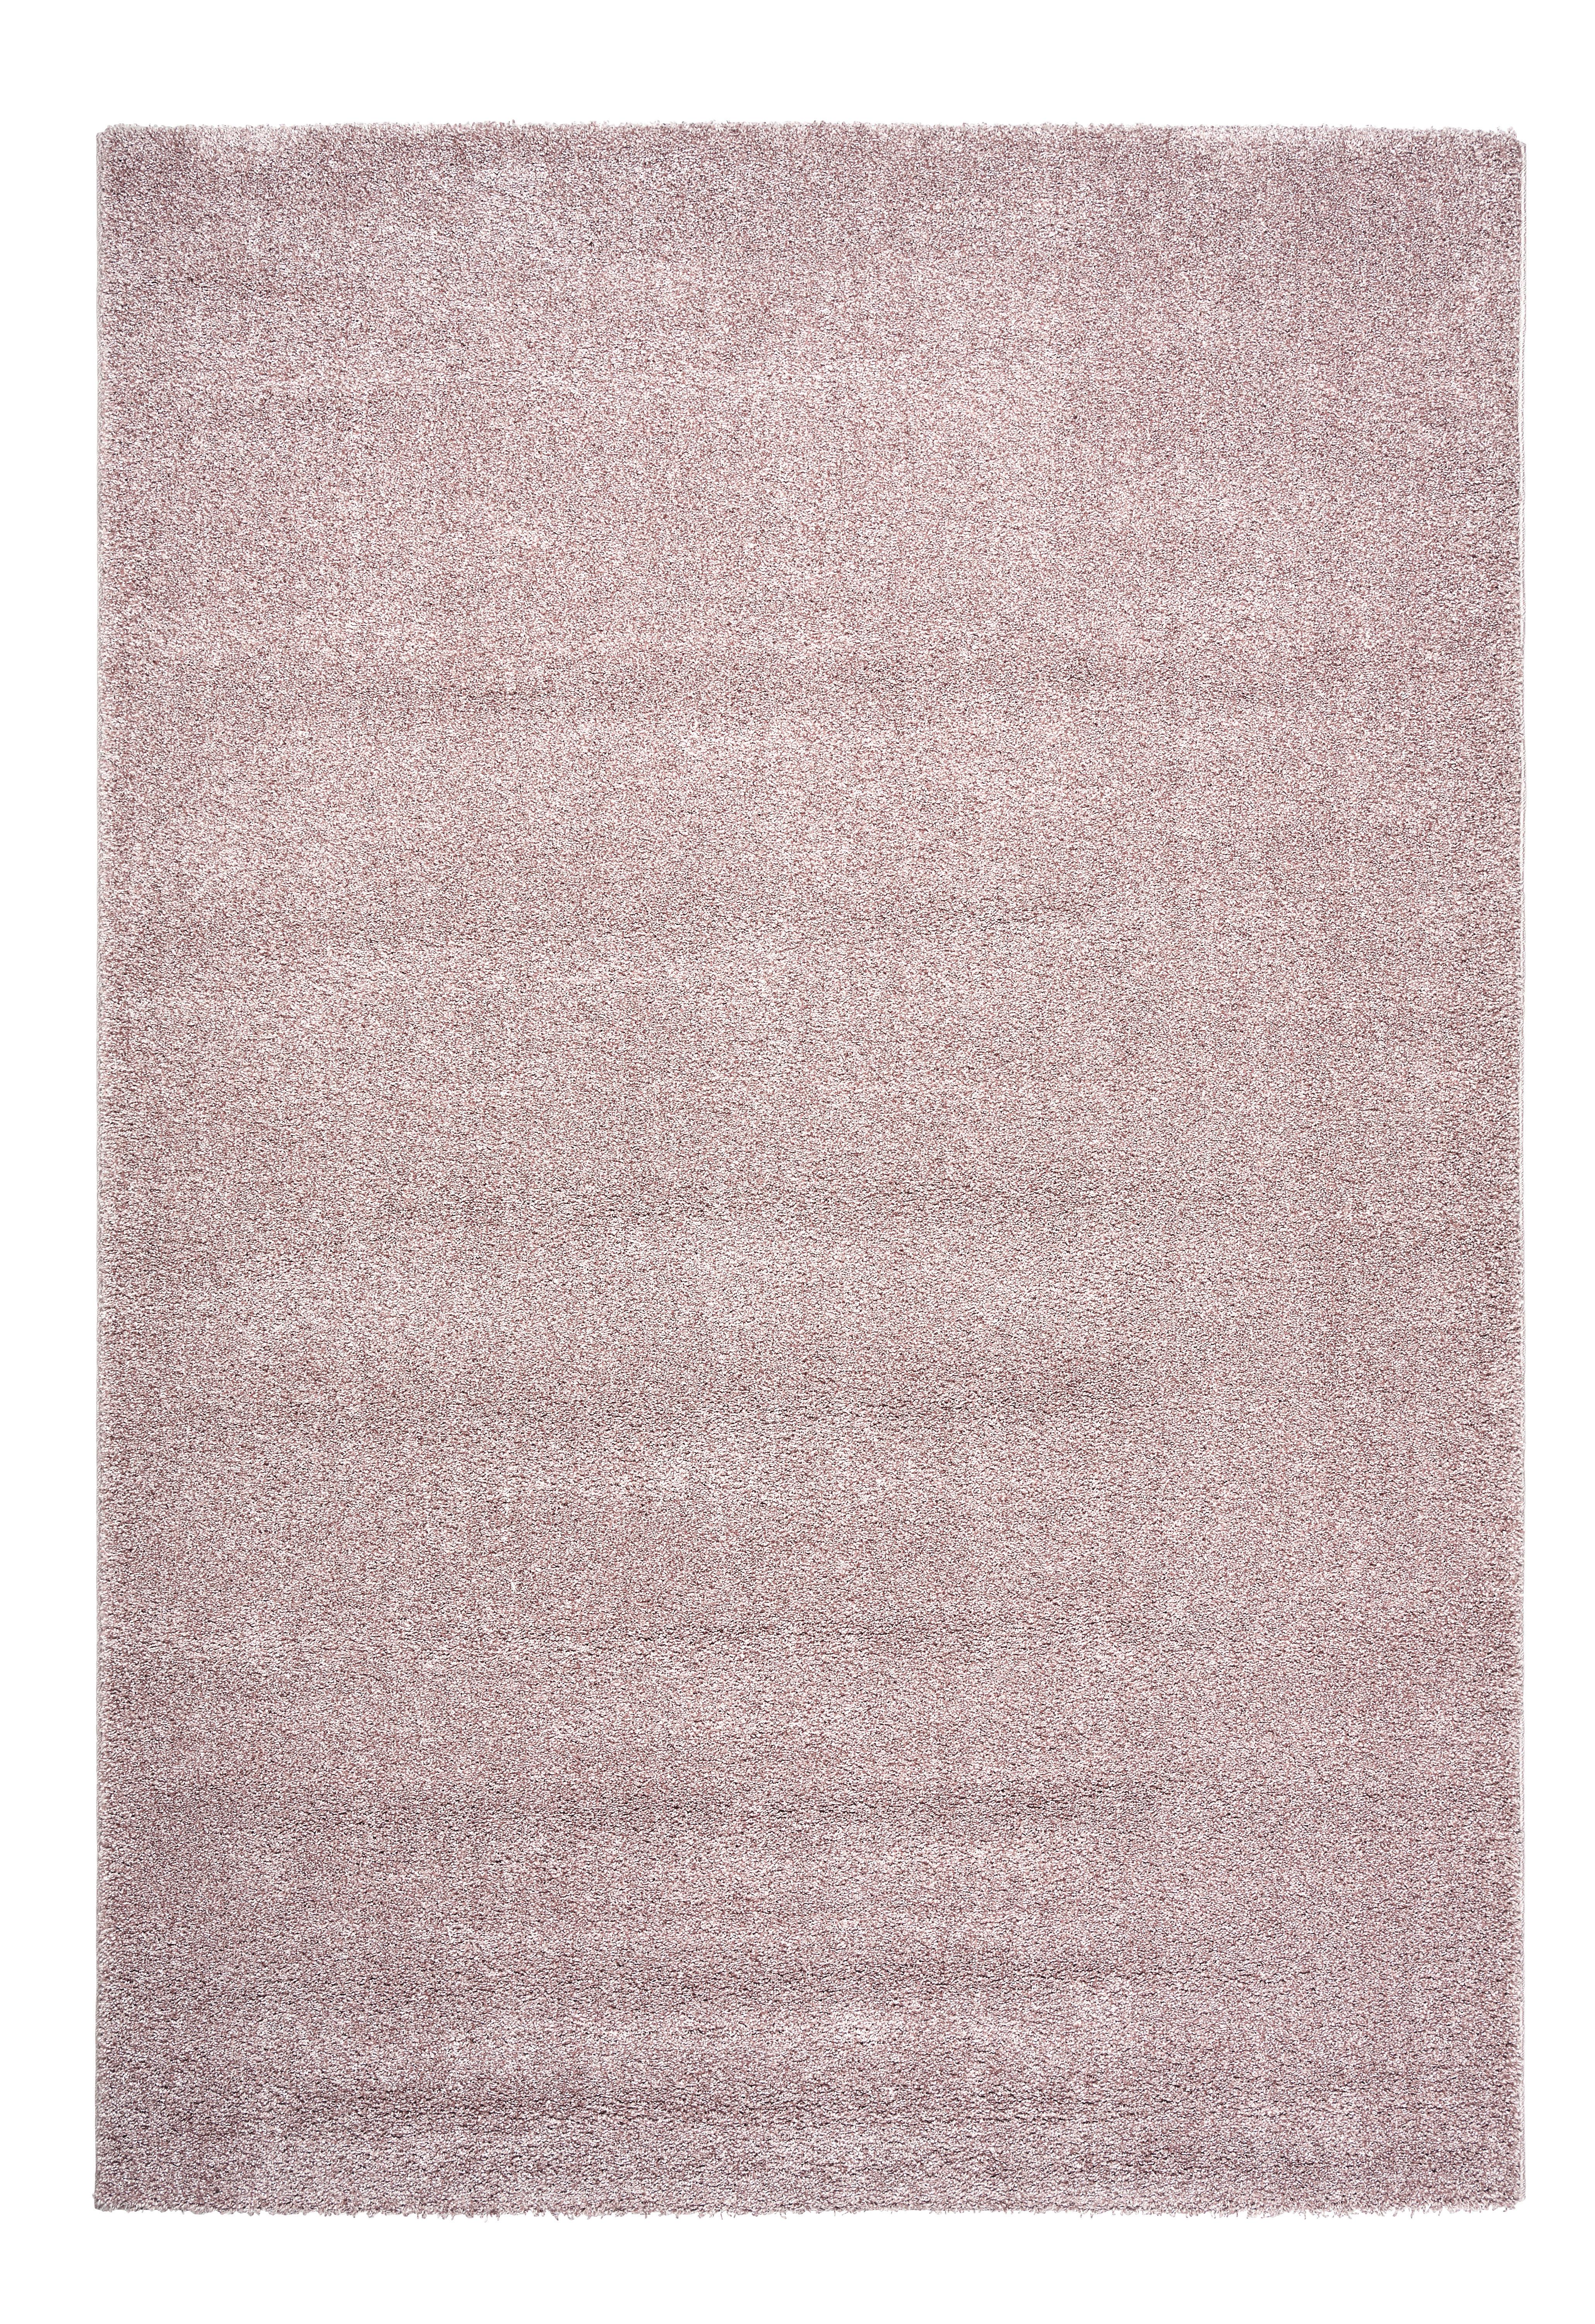 Tkaný Koberec Rubin 1, 80/150cm, Ružová - ružová, Romantický / Vidiecky, plast (80/150cm) - Modern Living